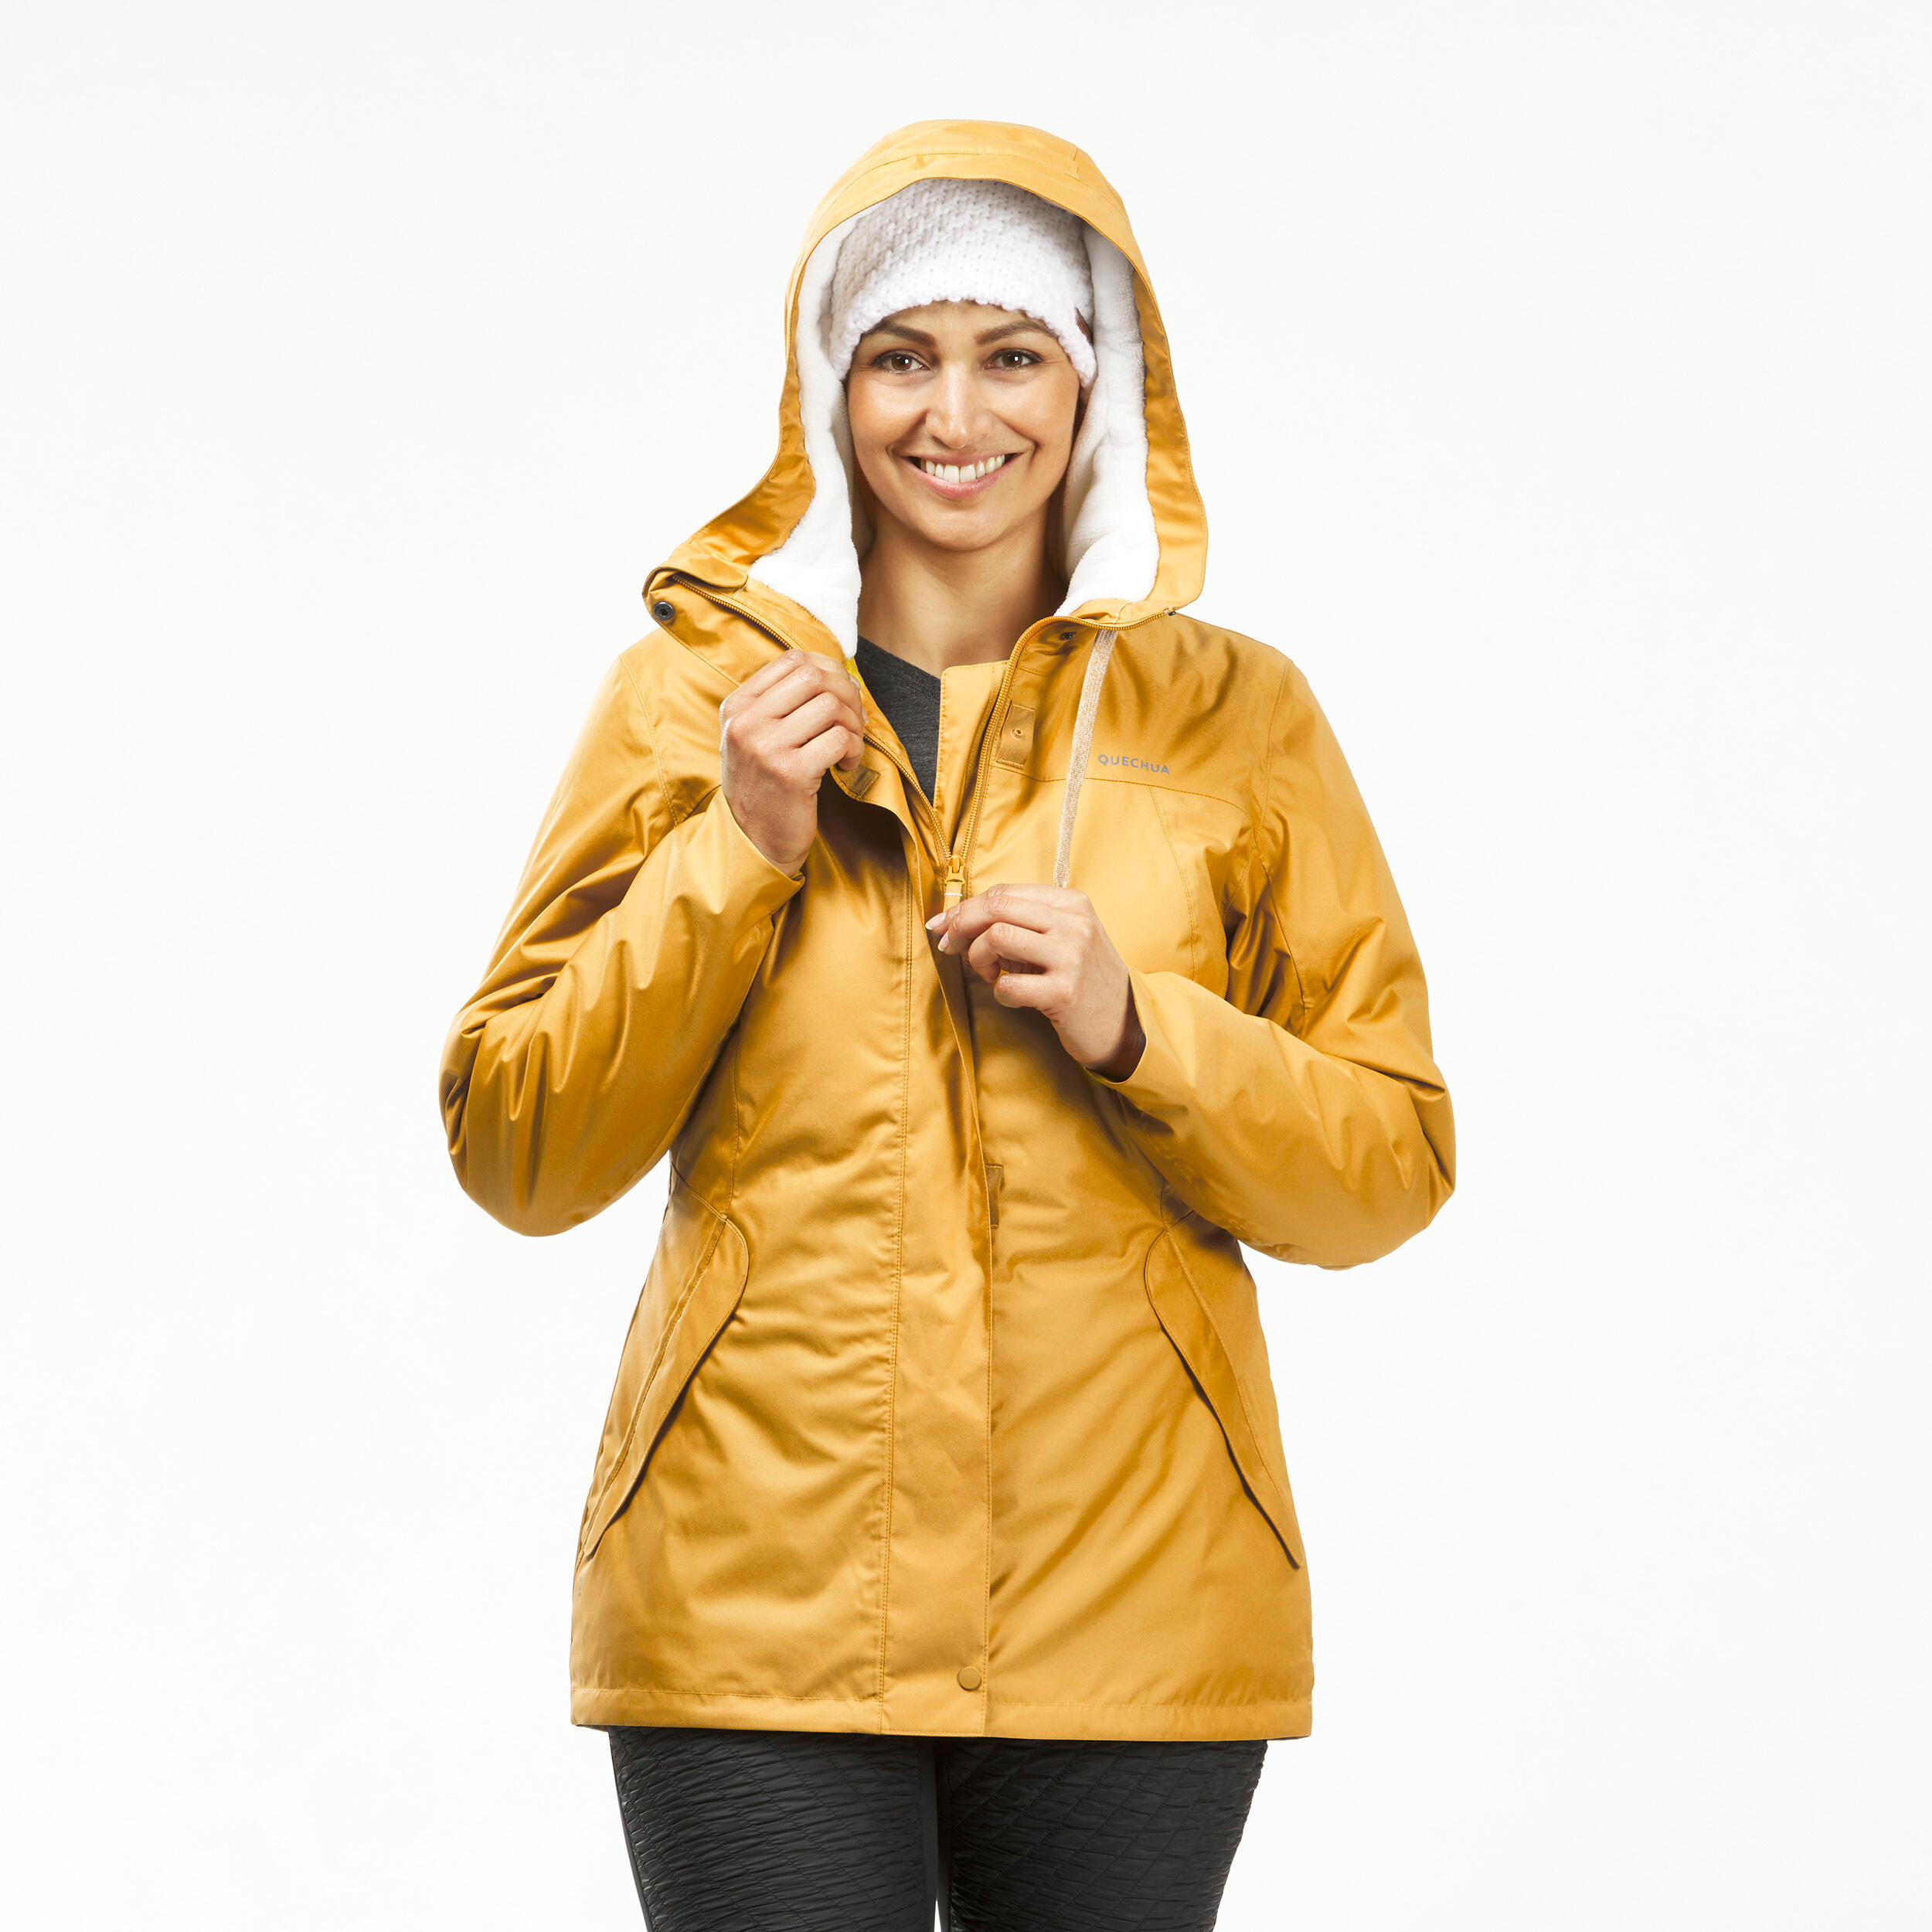 Windbreaker jacket - softshell - warm - MT500 - women’s - XS By FORCLAZ | Decathlon